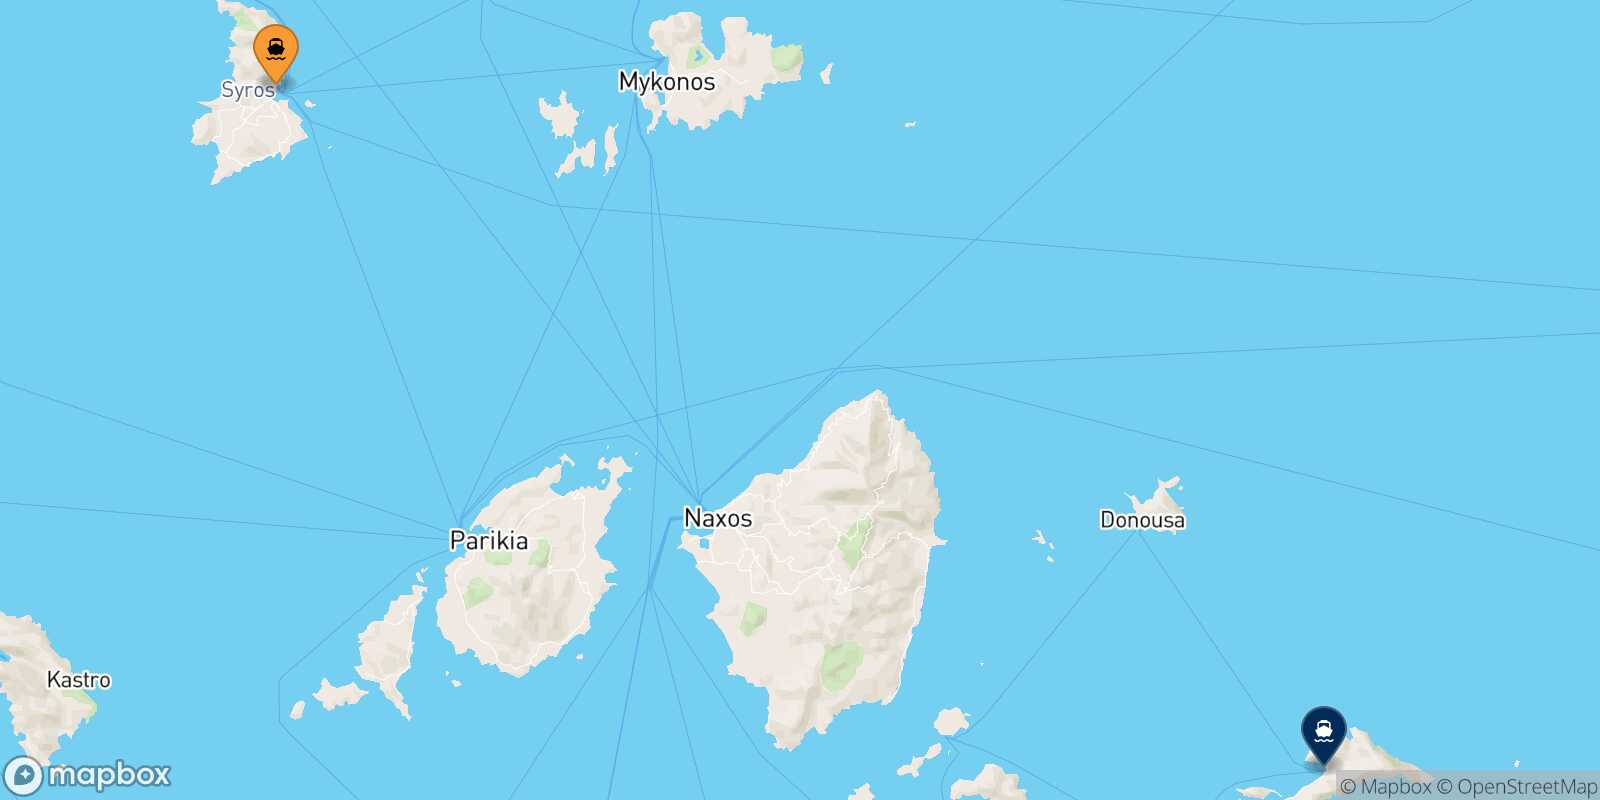 Syros Aegiali (Amorgos) route map